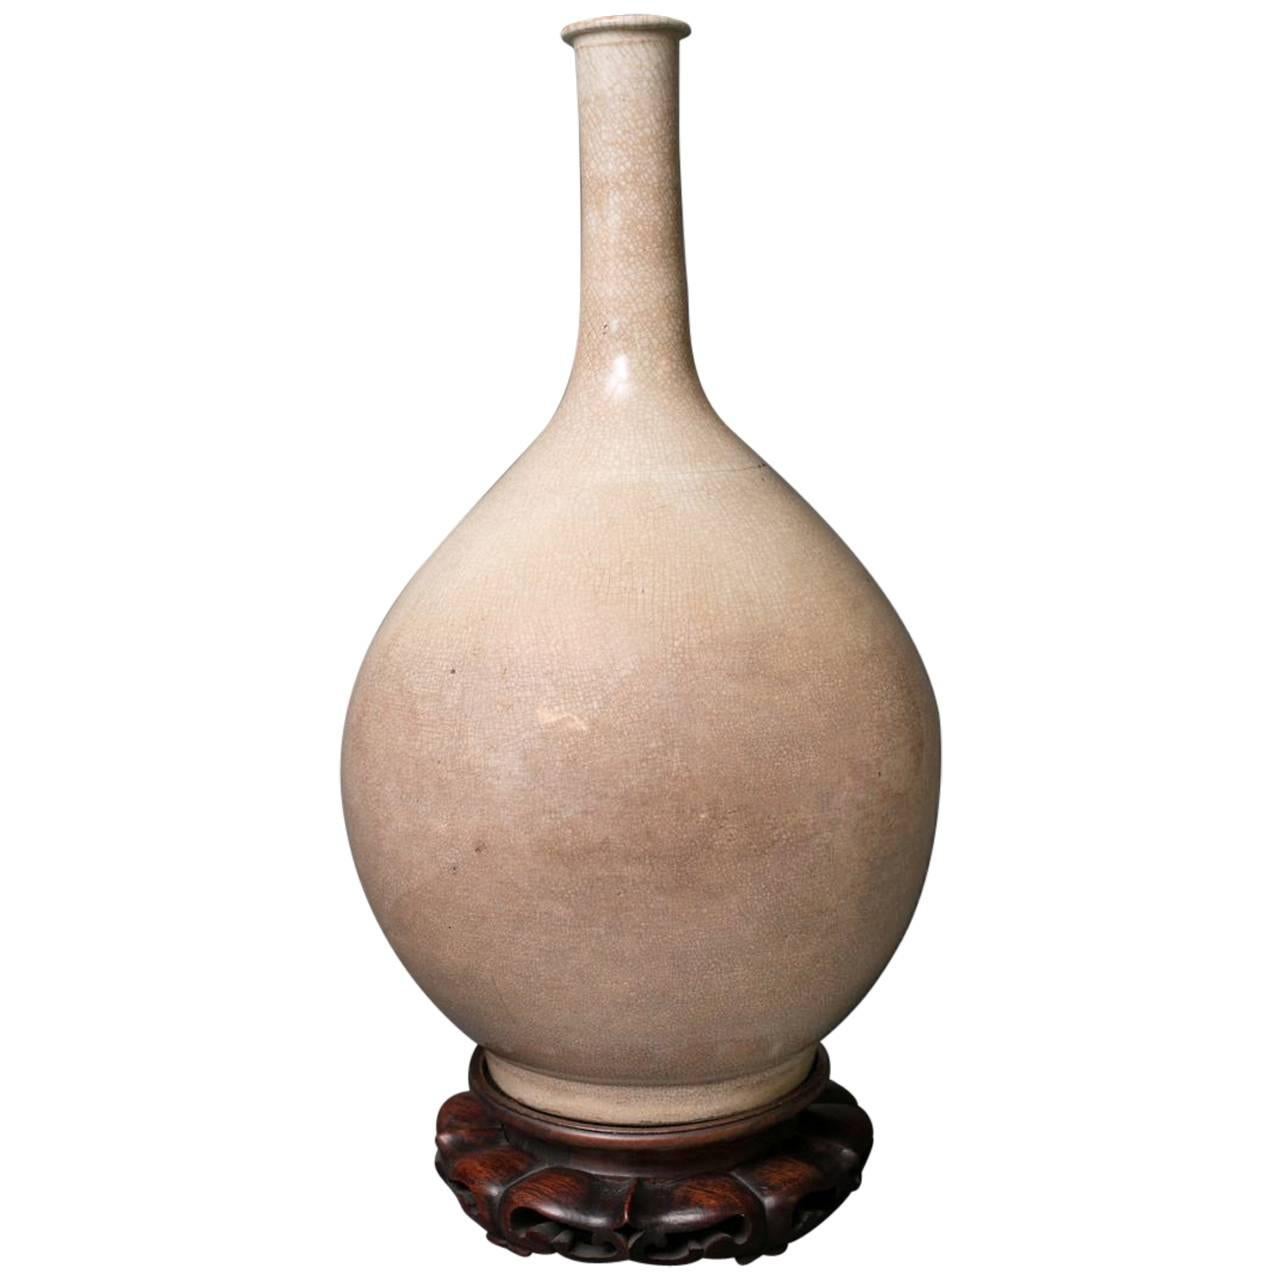 Crackle Glazed Porcelain Bottle Form Vase